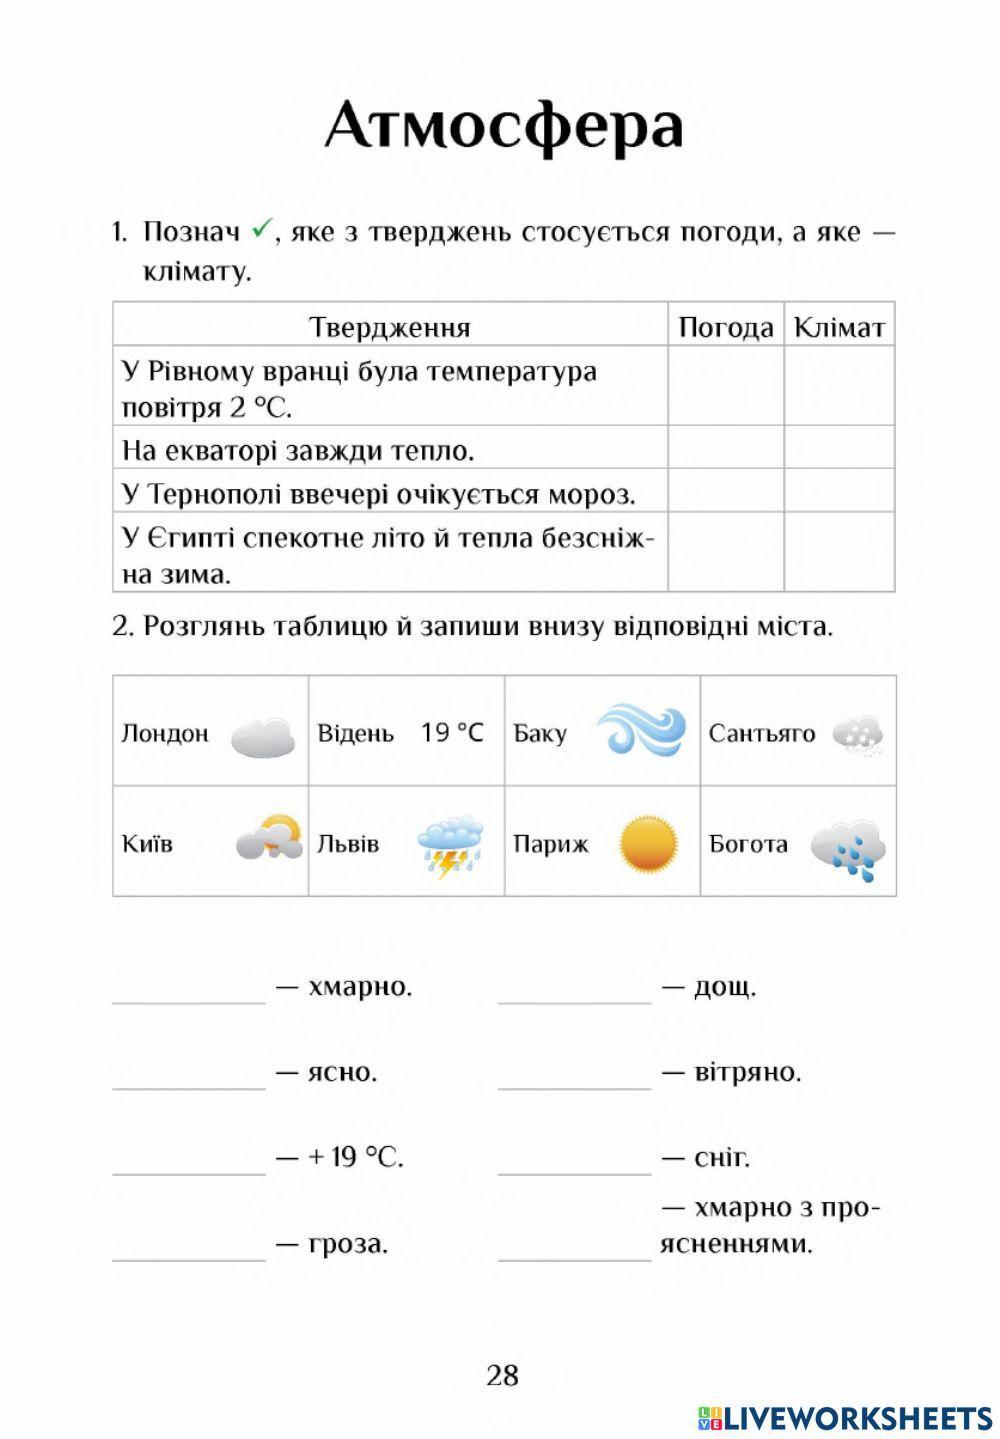 Погода і клімат-атмосфера-3 кл-Воронцова-ЯДС